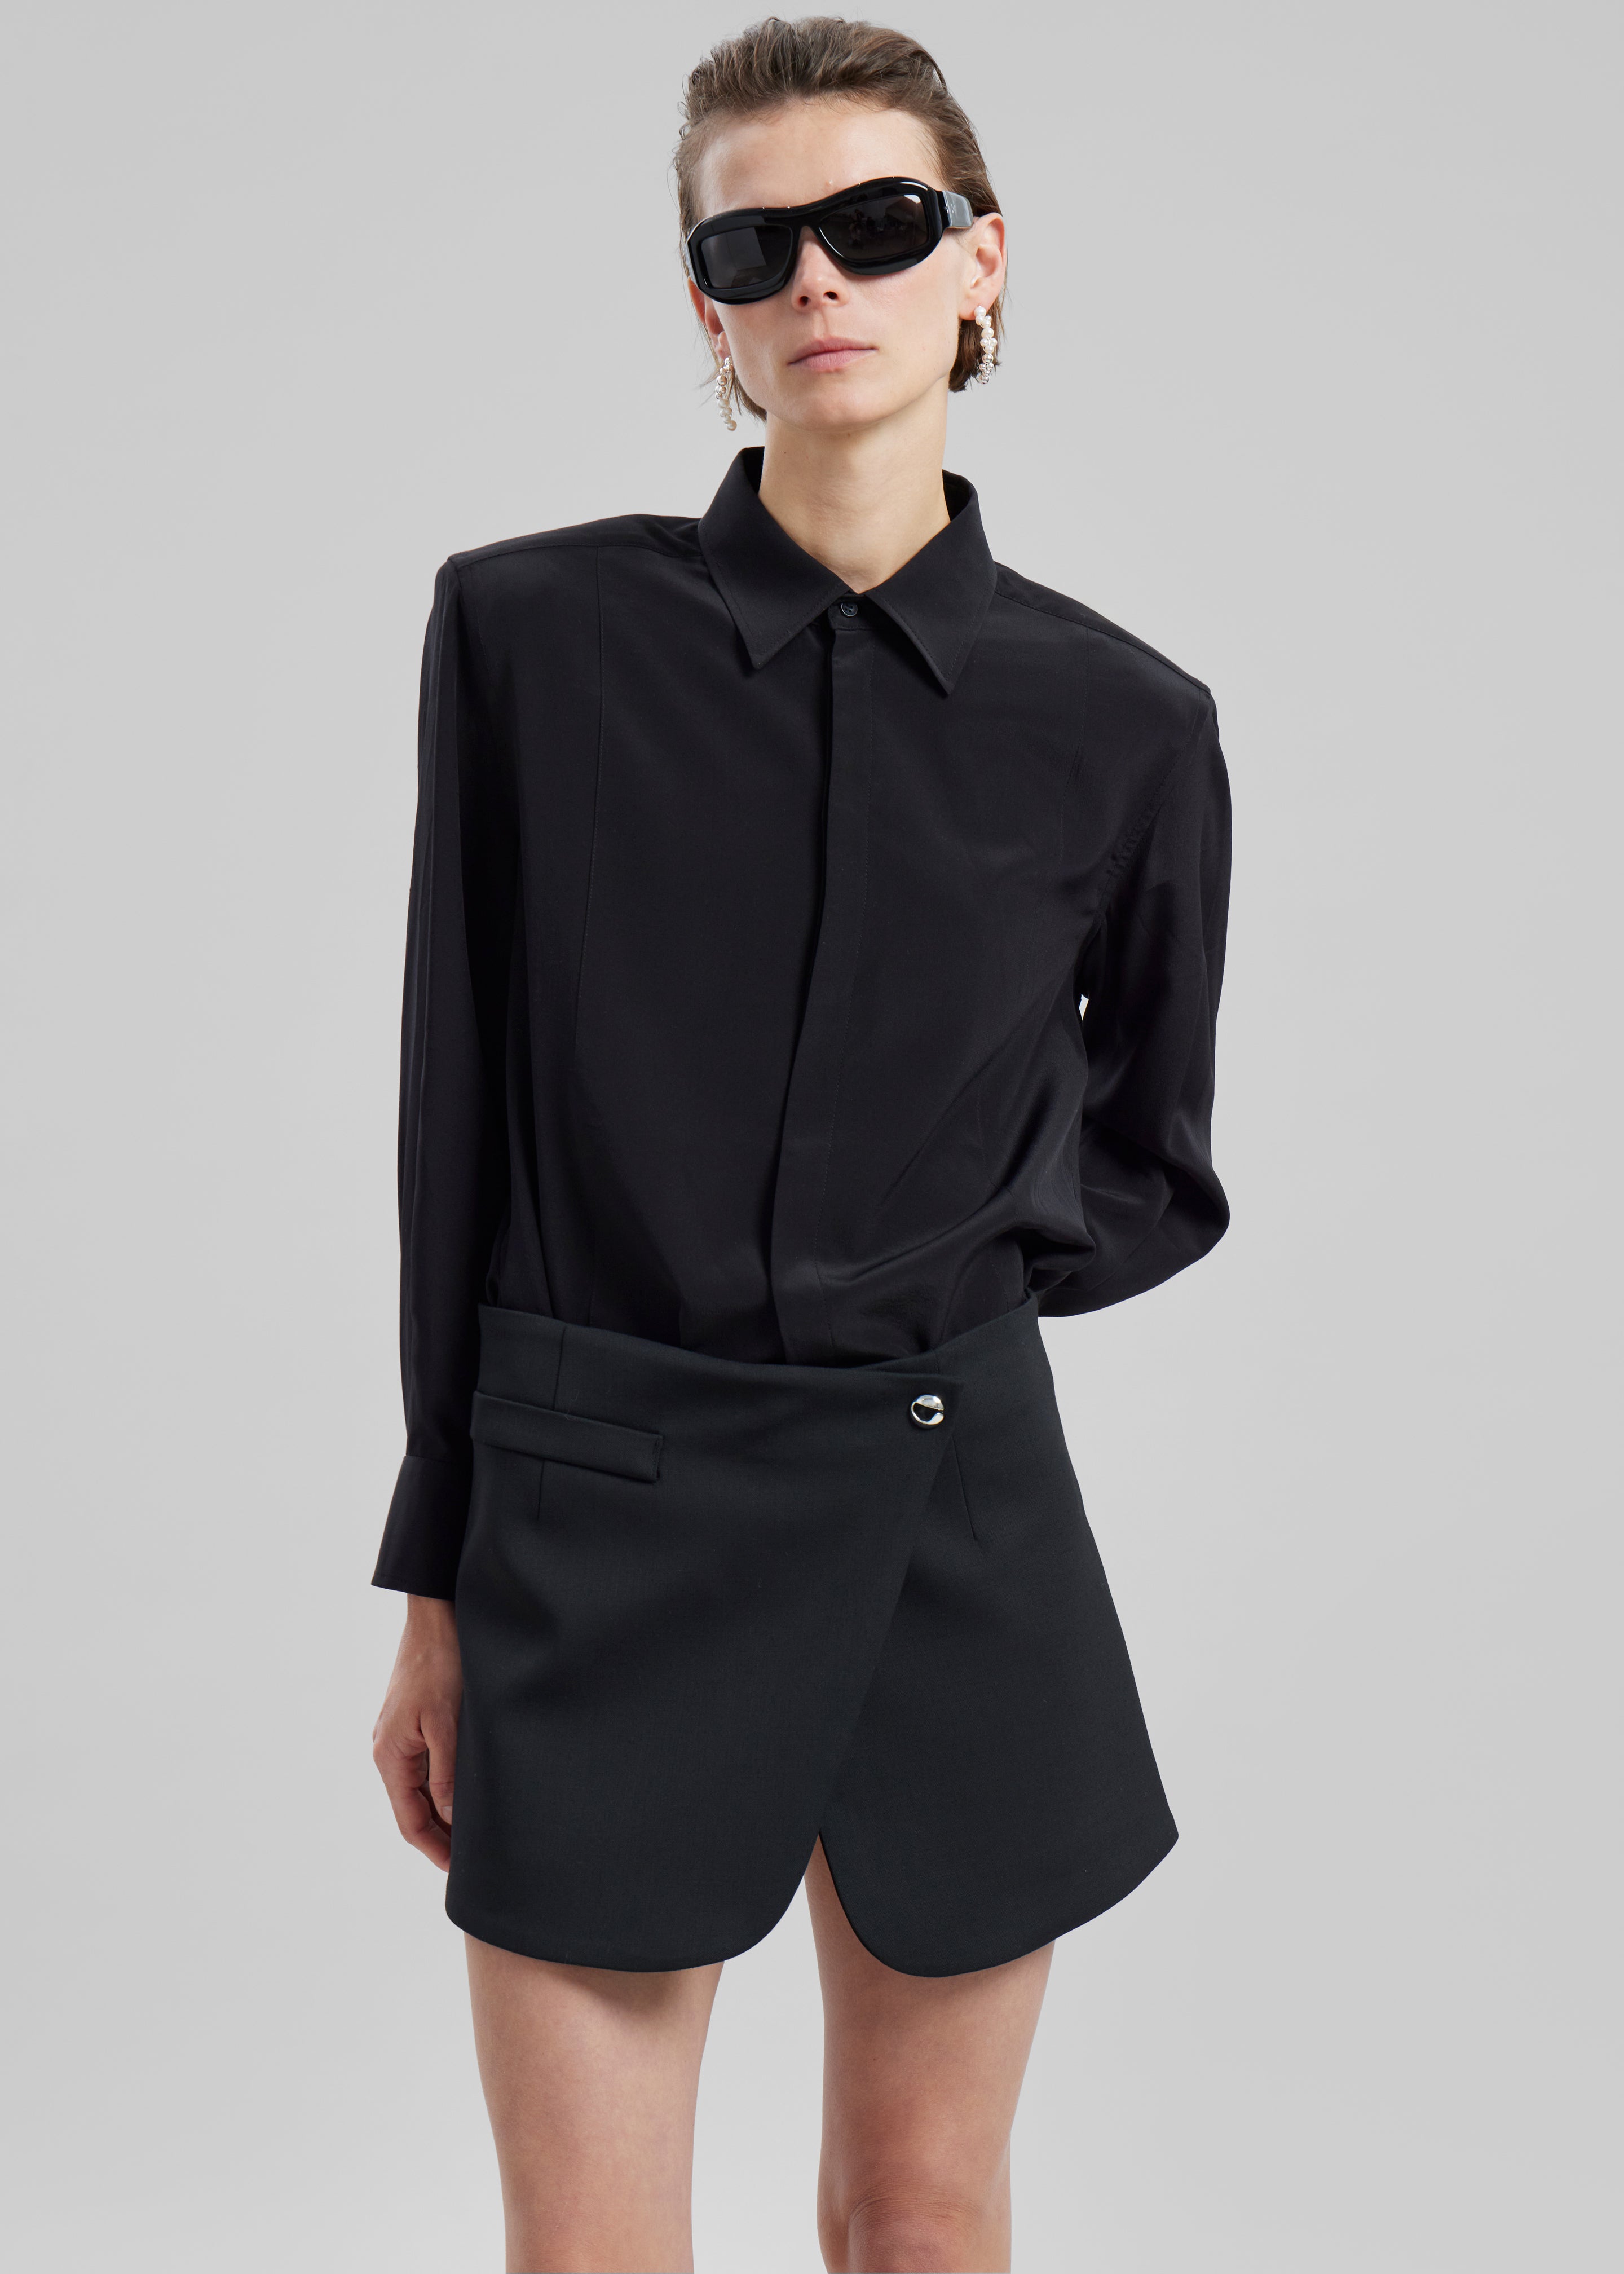 Coperni Tailored Mini Skirt - Black - 1